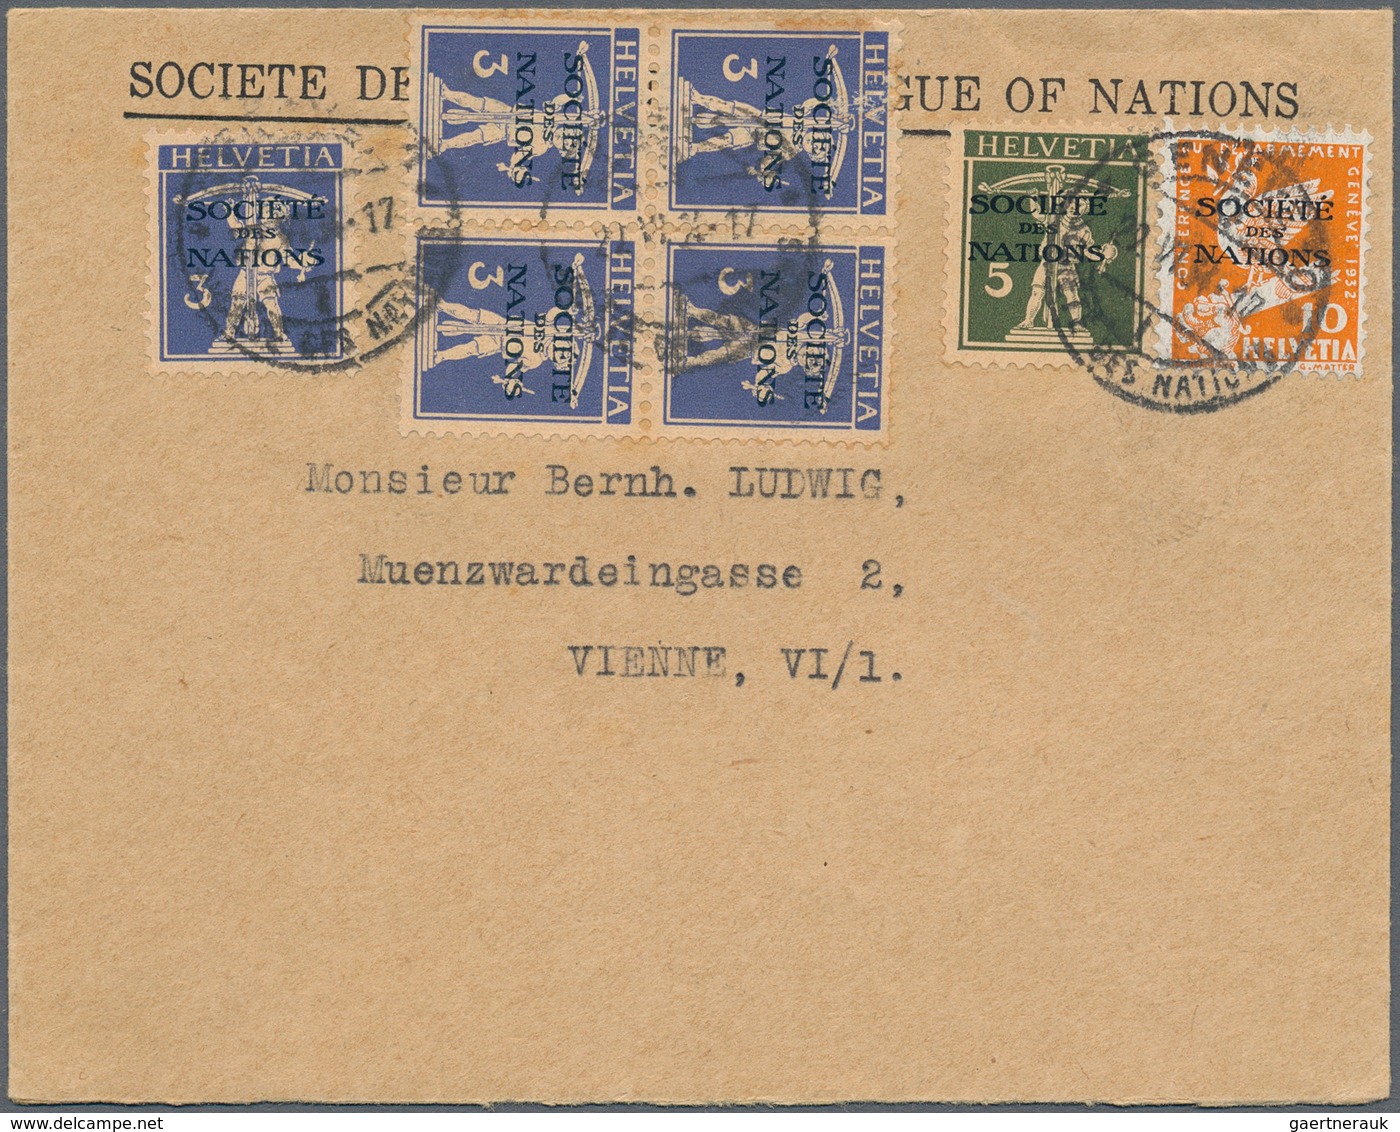 Schweiz - Völkerbund (SDN): 1922/1946, Lot von 17 Bedarfsbelegen, dabei drei Einschreibebriefe je mi